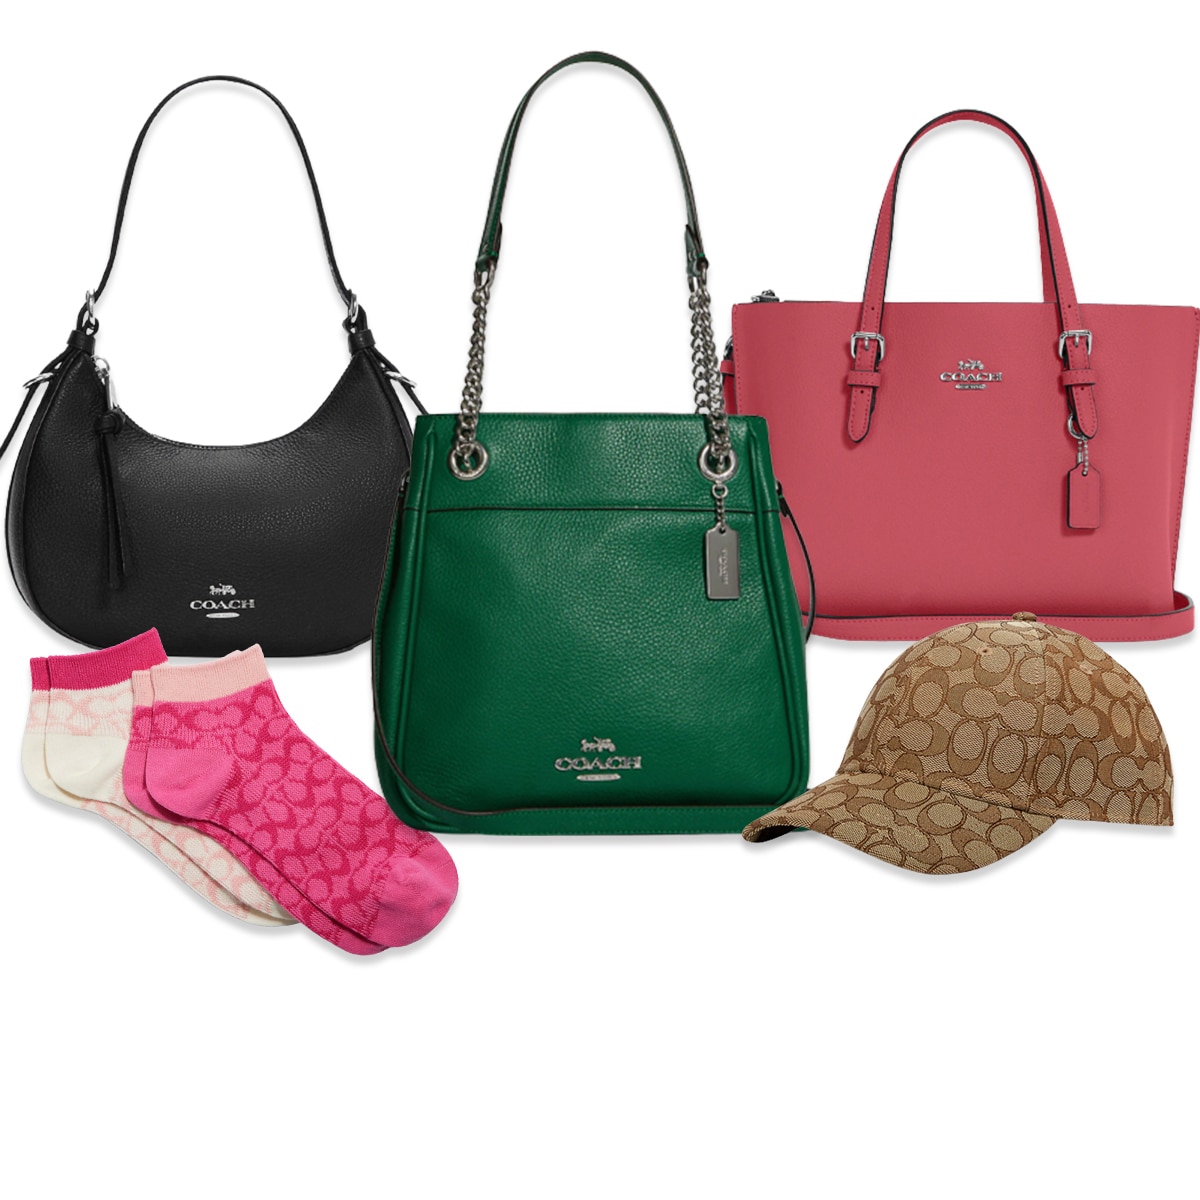 Top Handle Satchel Shoulder Bags Purses and Handbags - Walmart.com